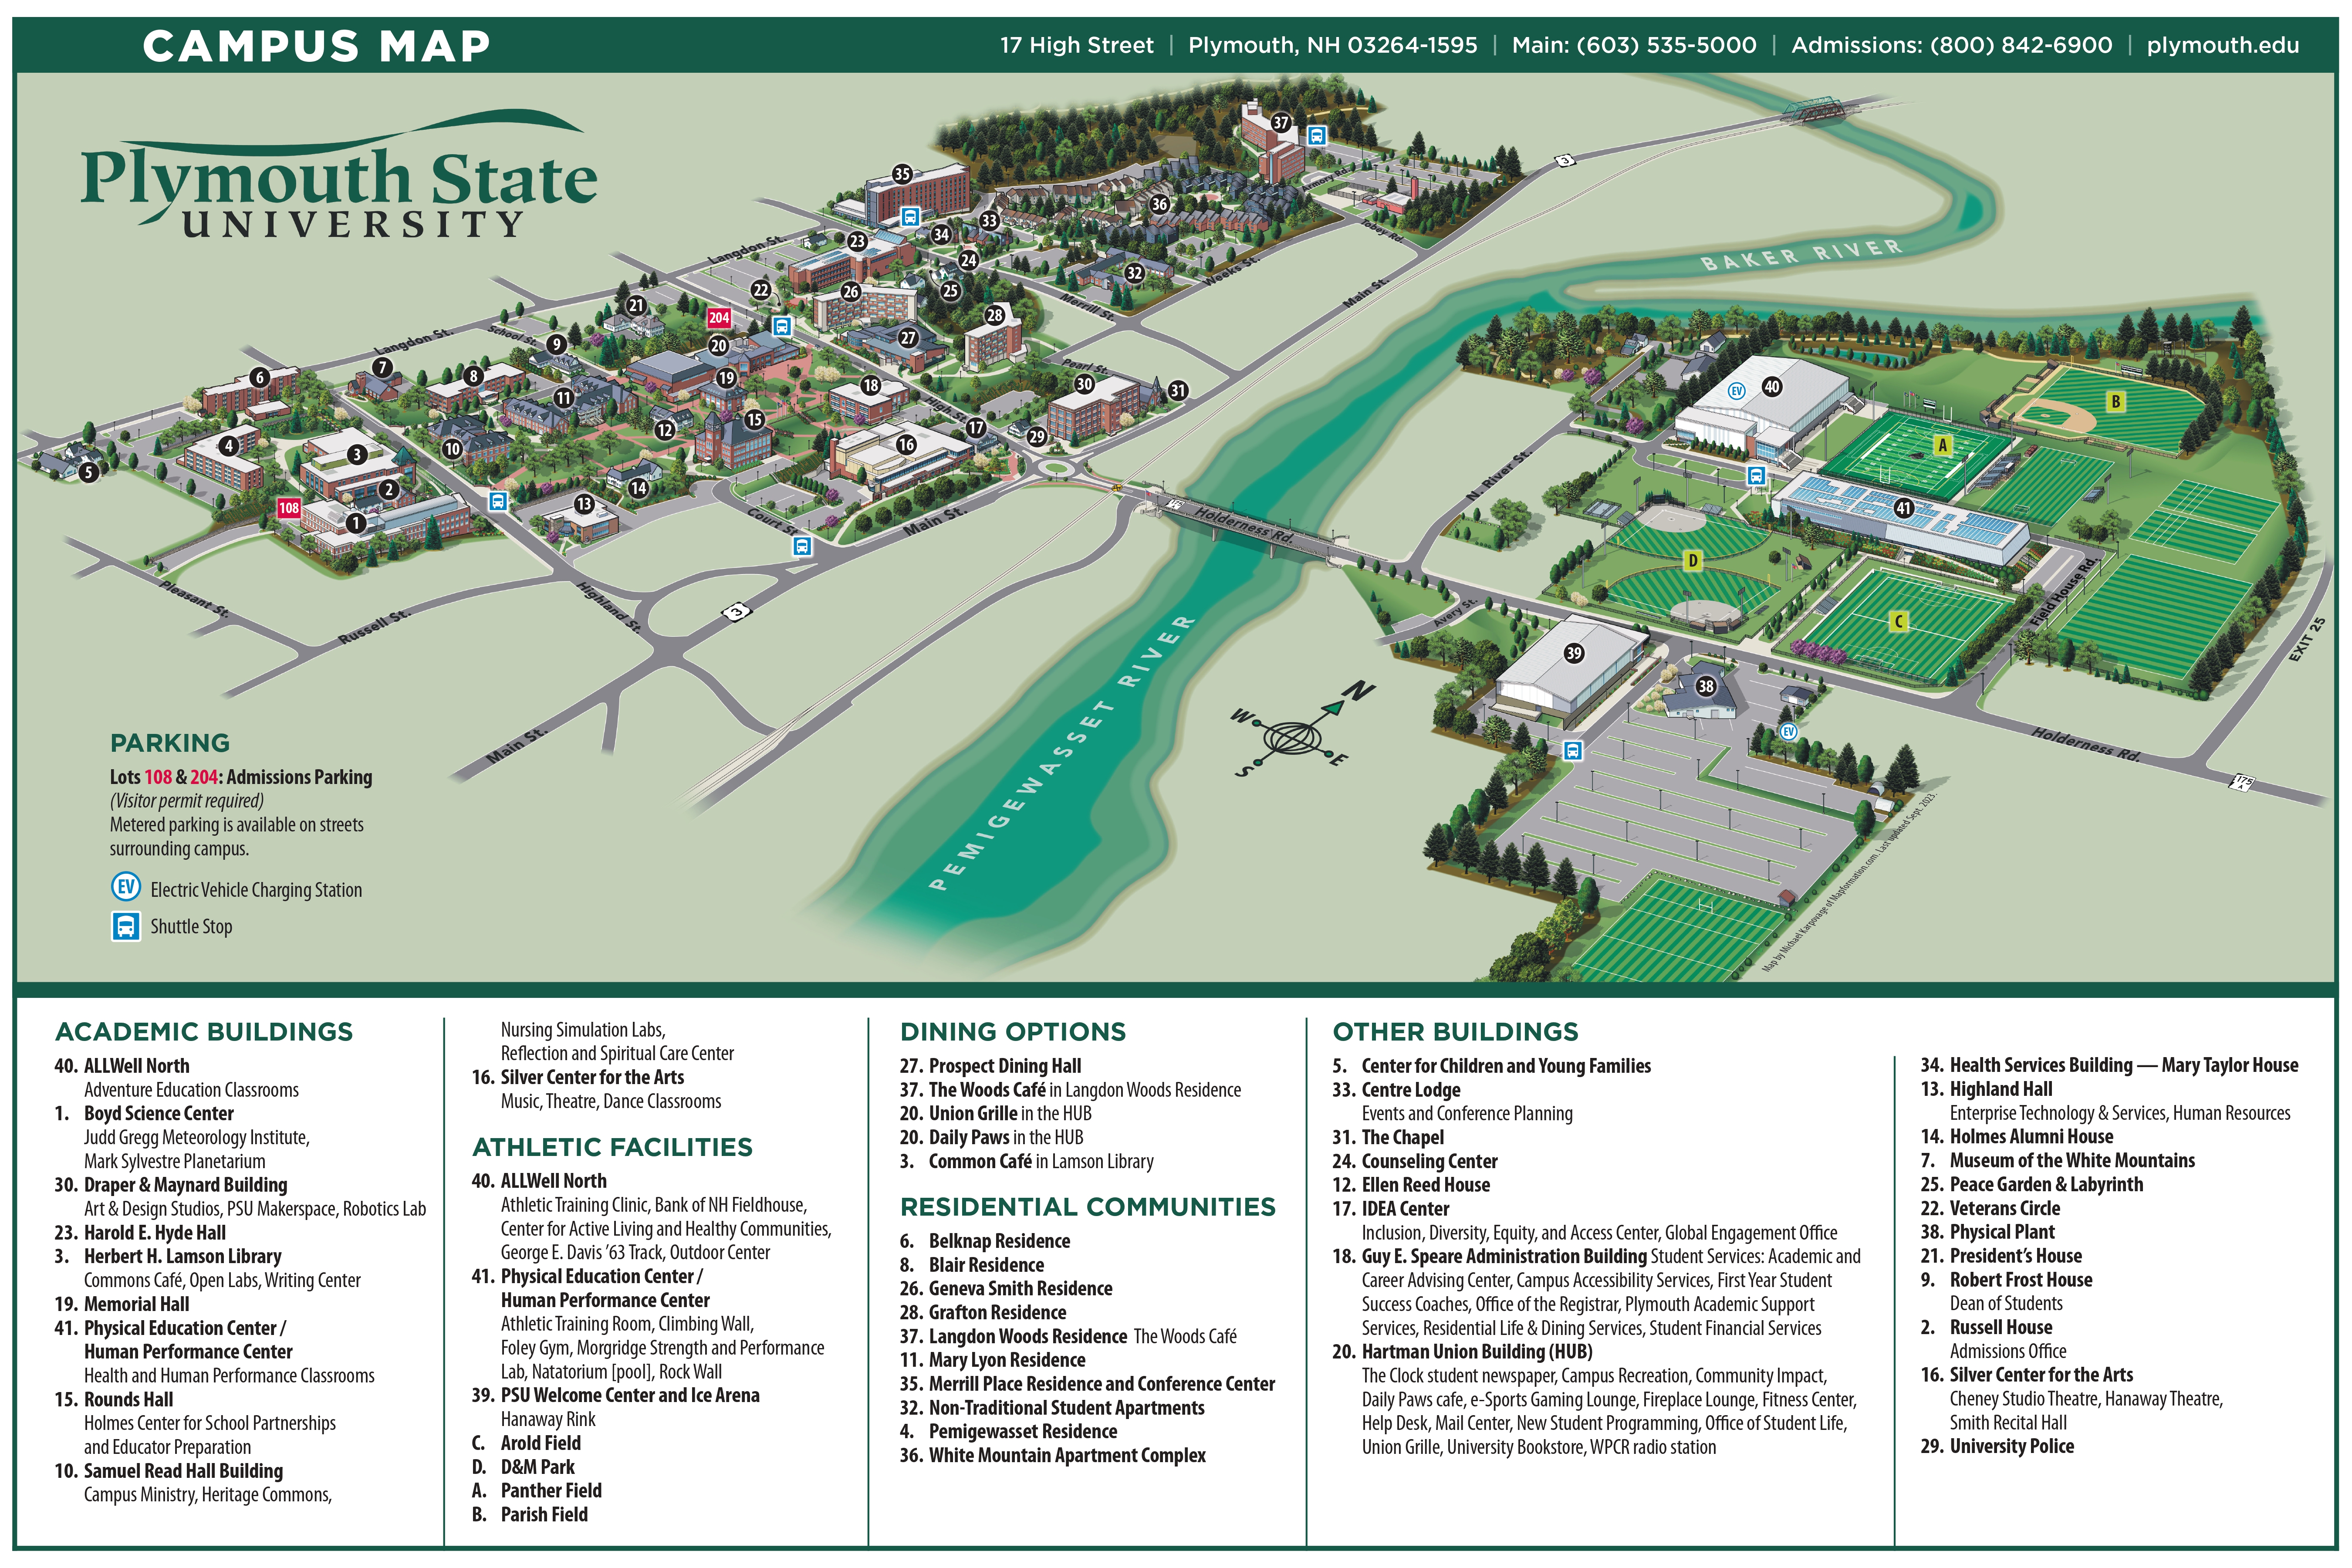 Map of PSU campus